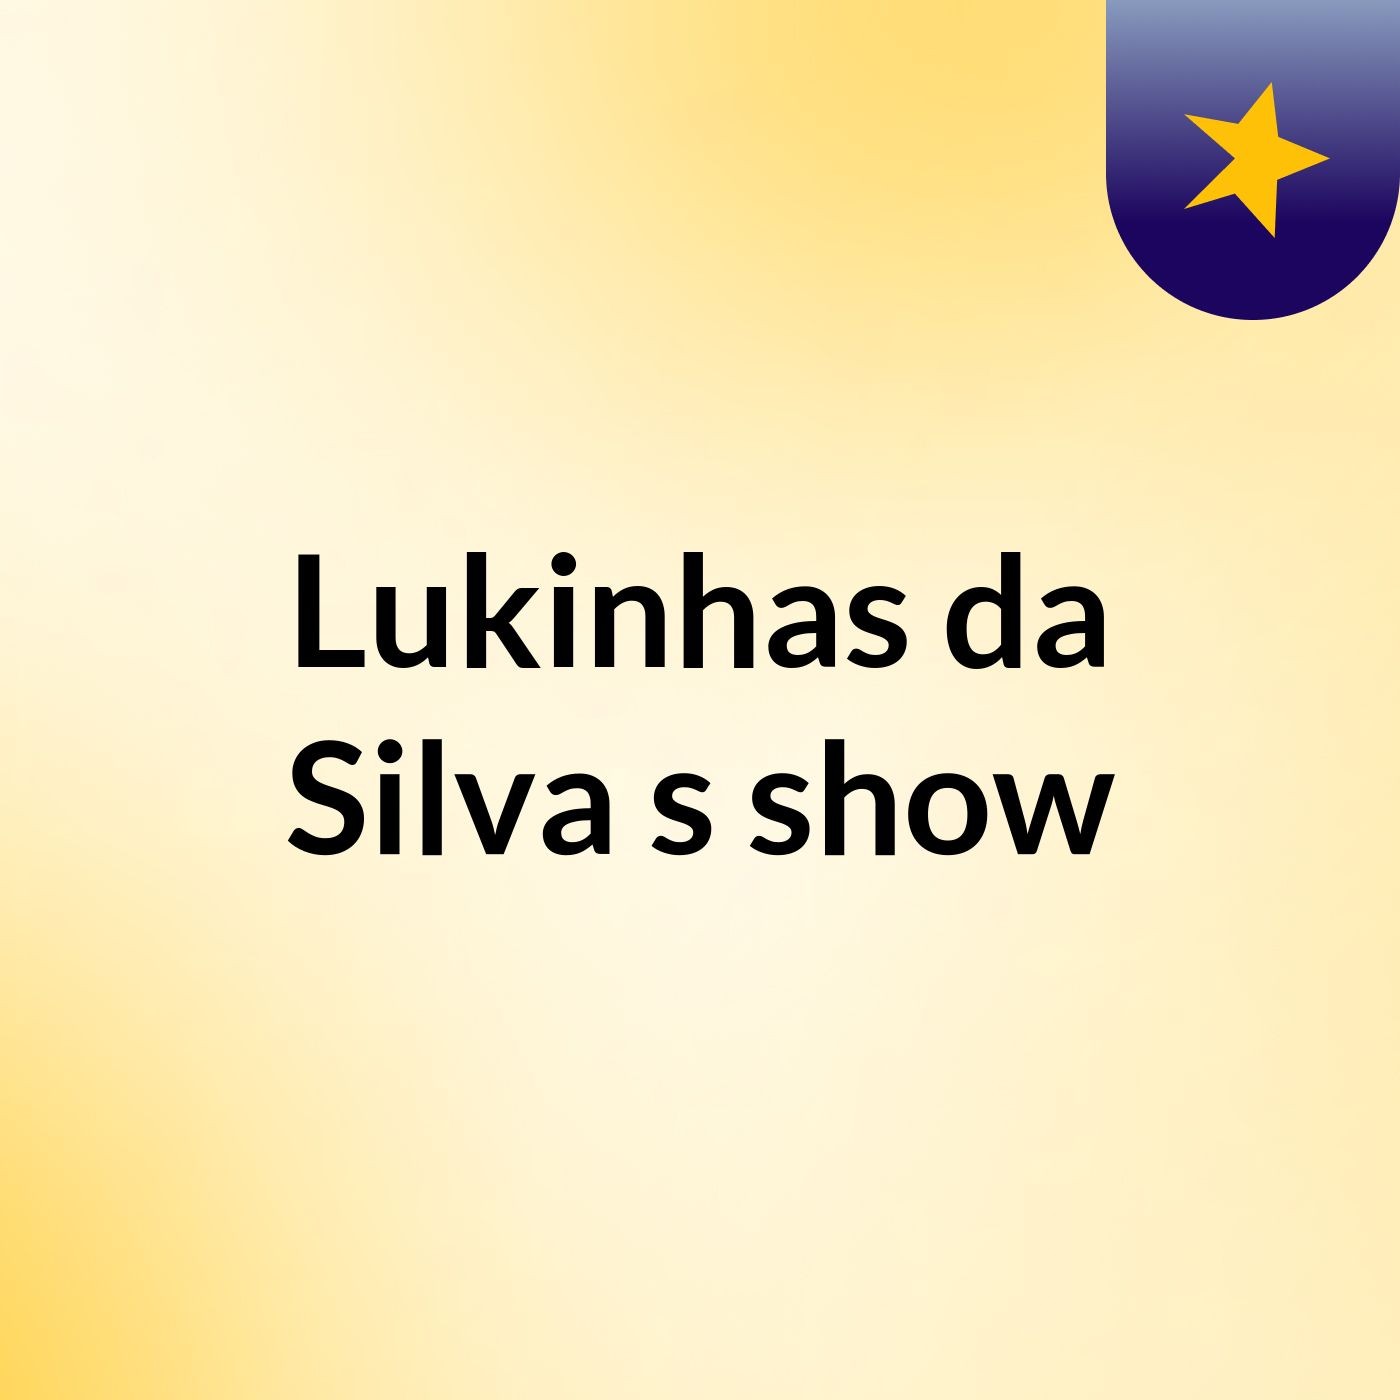 Lukinhas da Silva's show